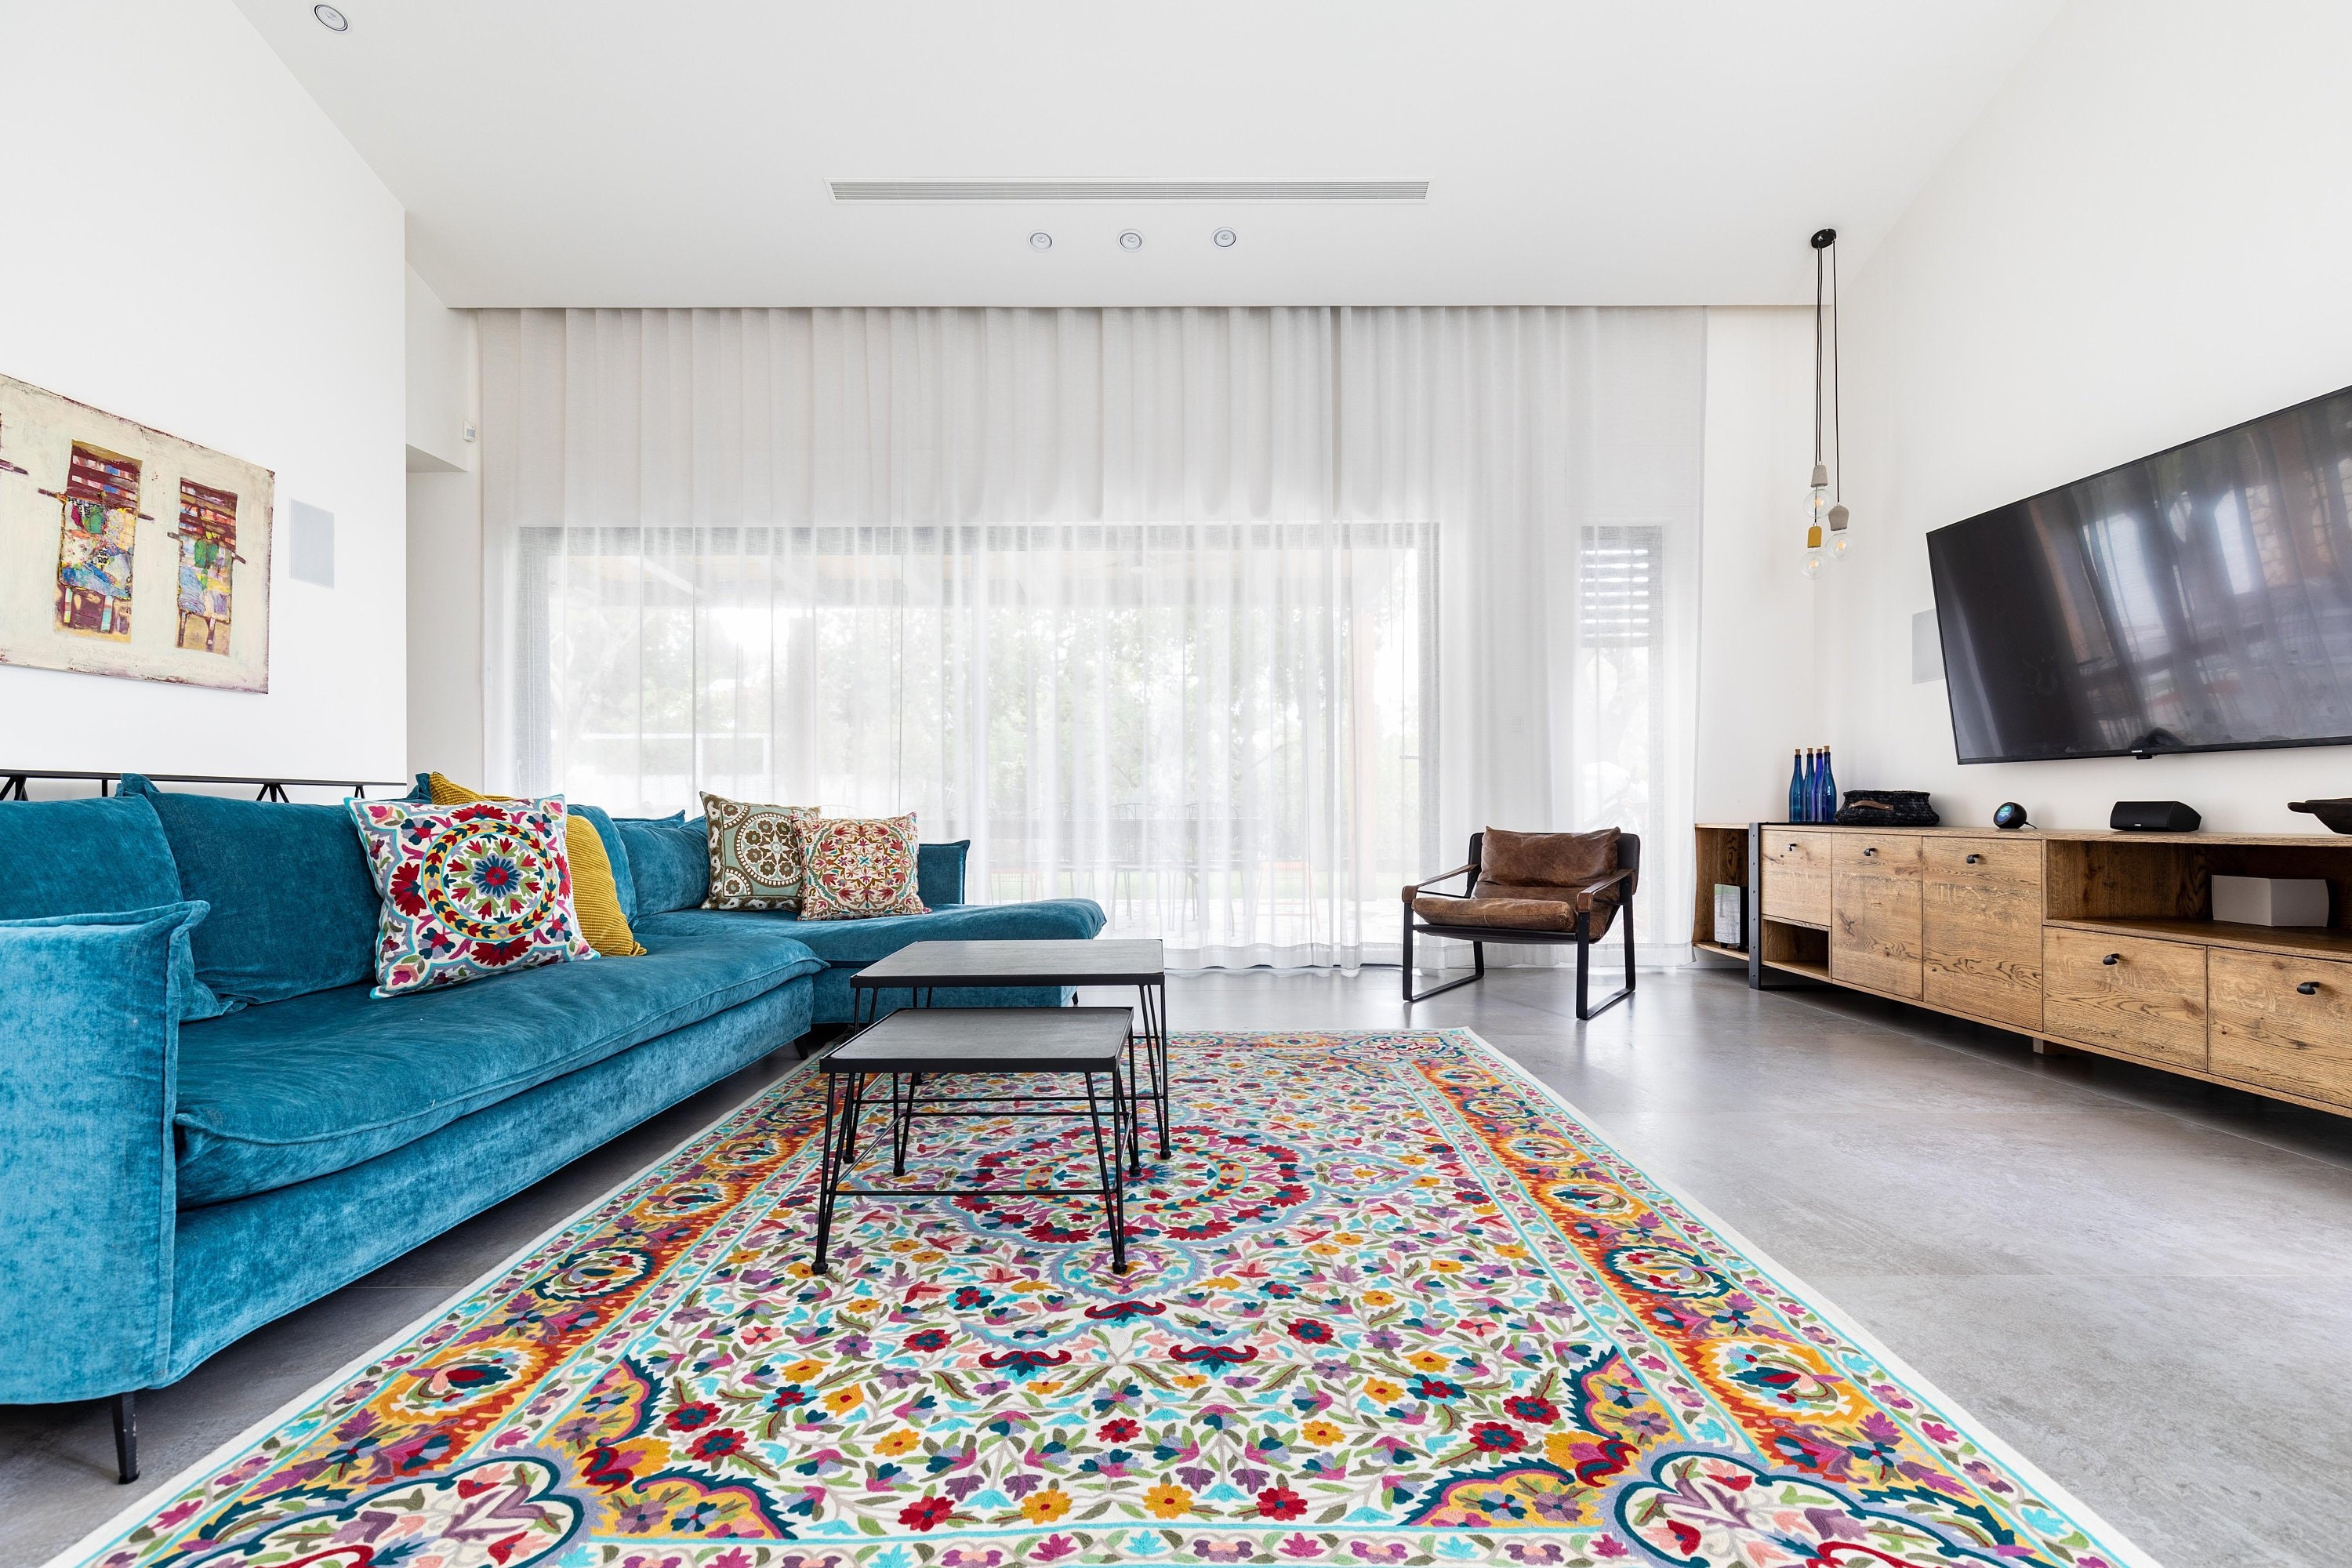 6X9 Mandala rug very colorful wool rug. Great as living room | Etsy